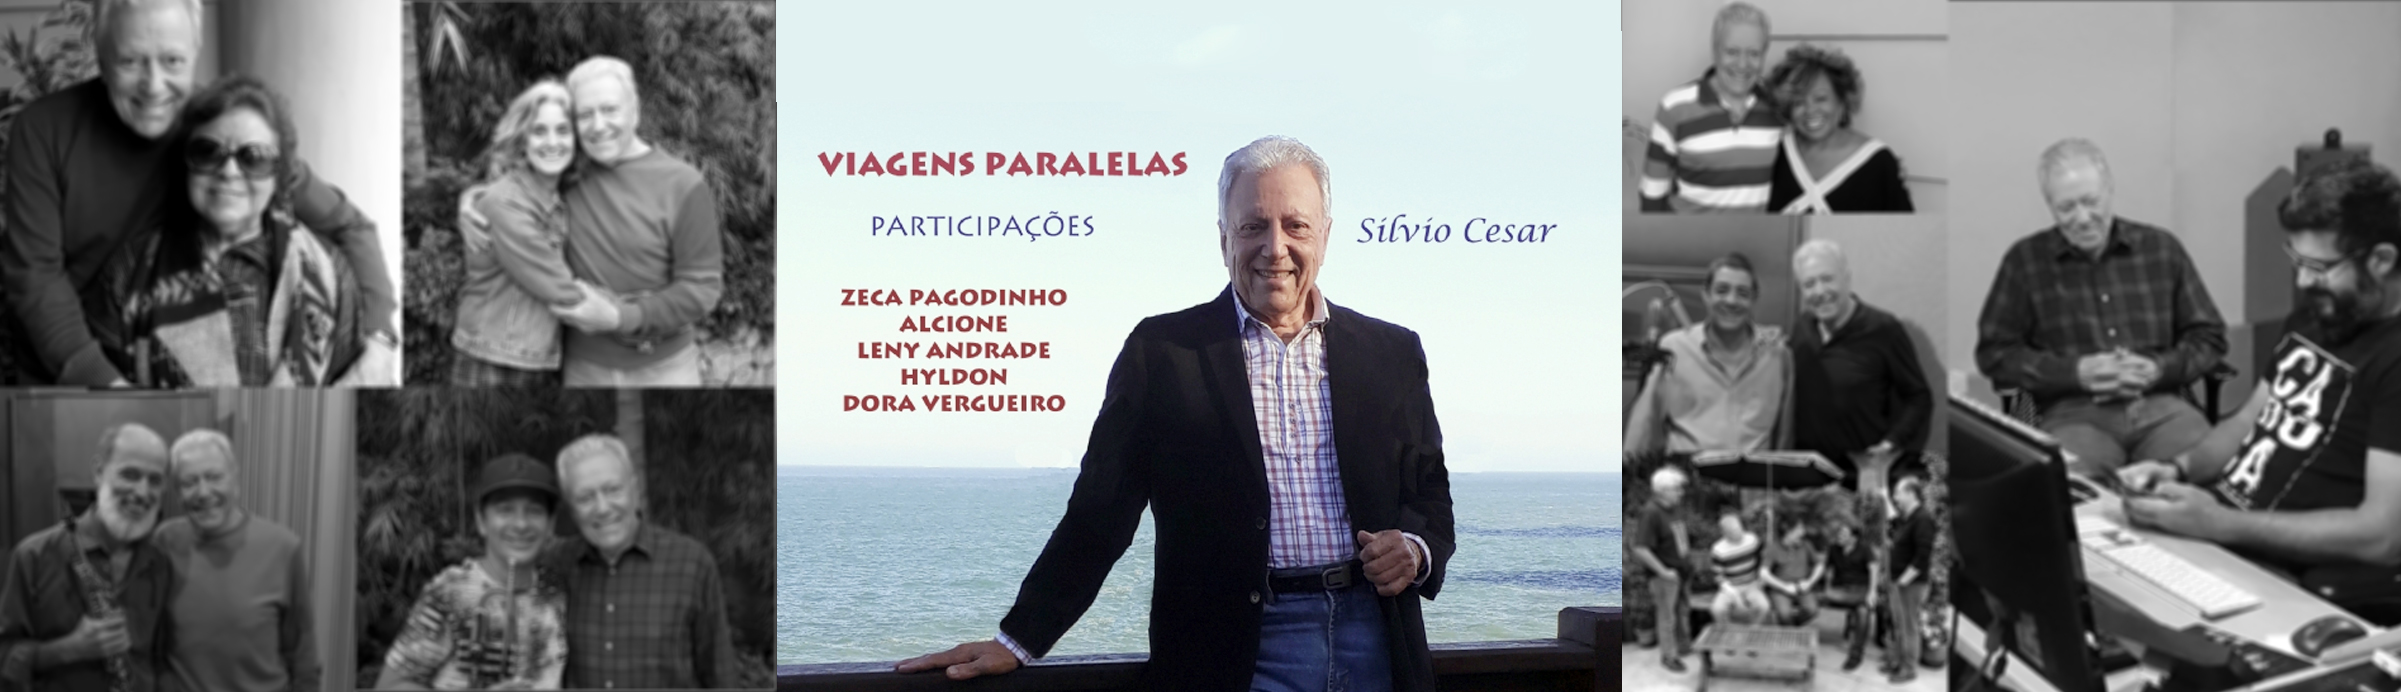 Silvio Cesar reafirma o talento diversificado em “Viagens paralelas”